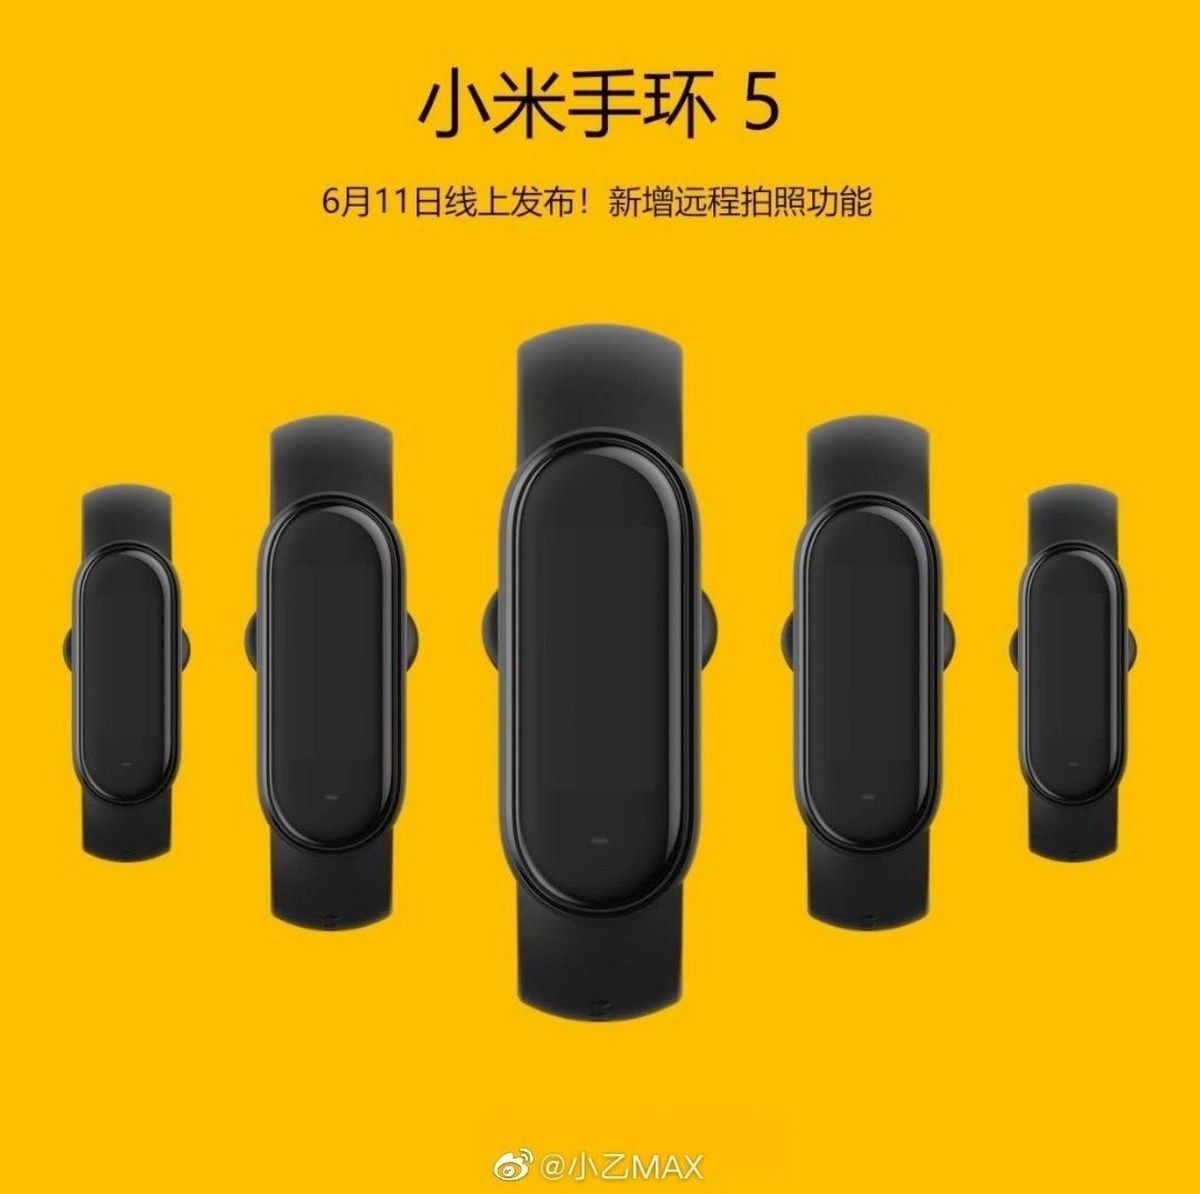 Xiaomi Mi Band 5 sẽ ra mắt 11/6 với khả năng điều khiển camera từ xa